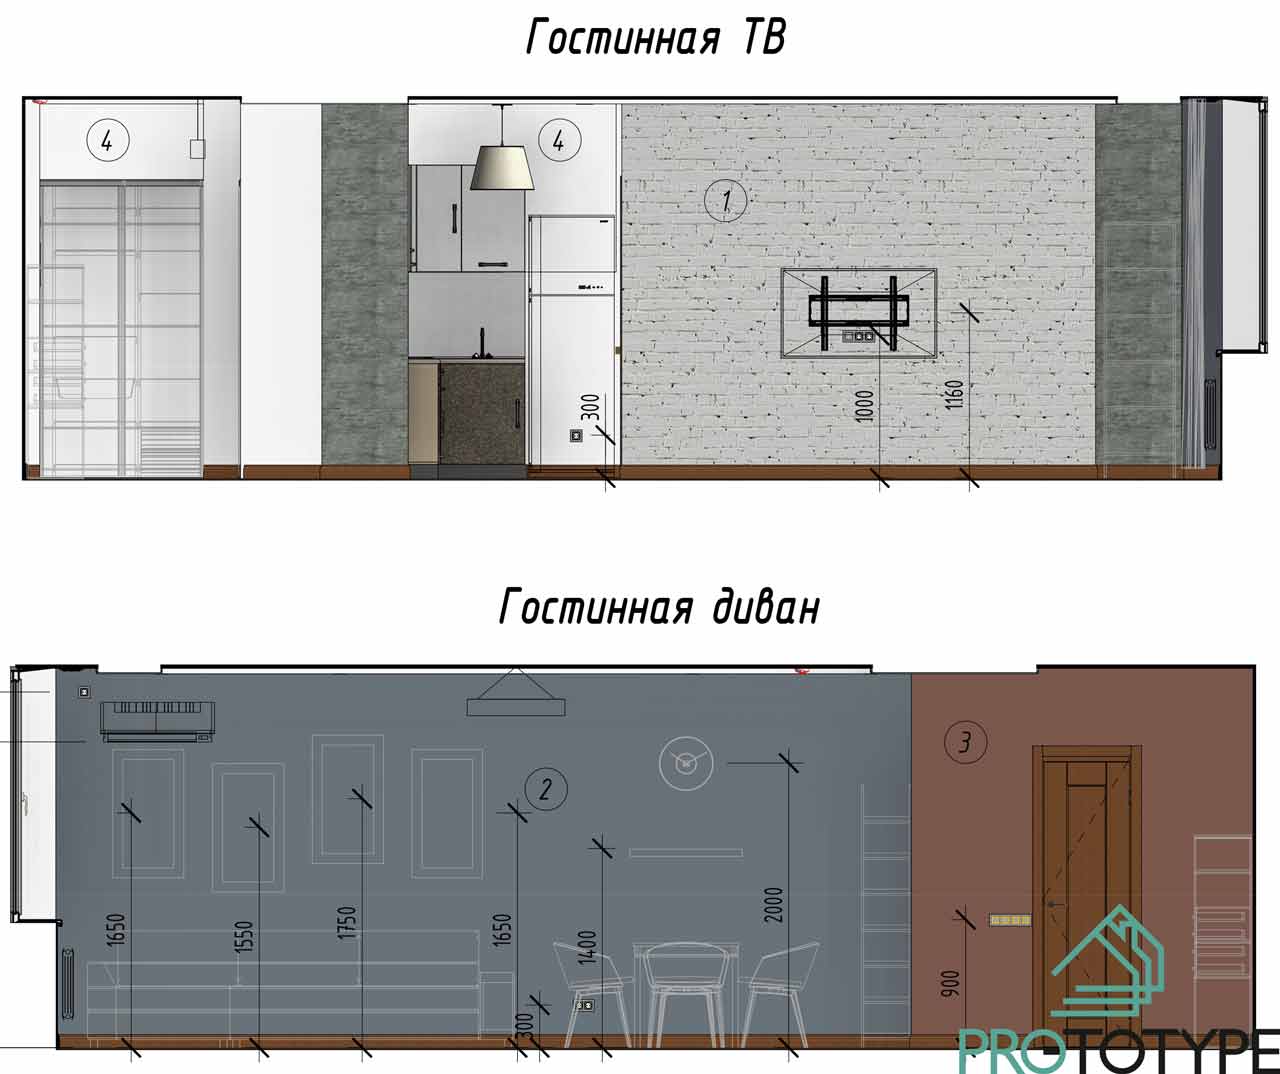 Дизайн интерьера пример развертки стен с текстурами